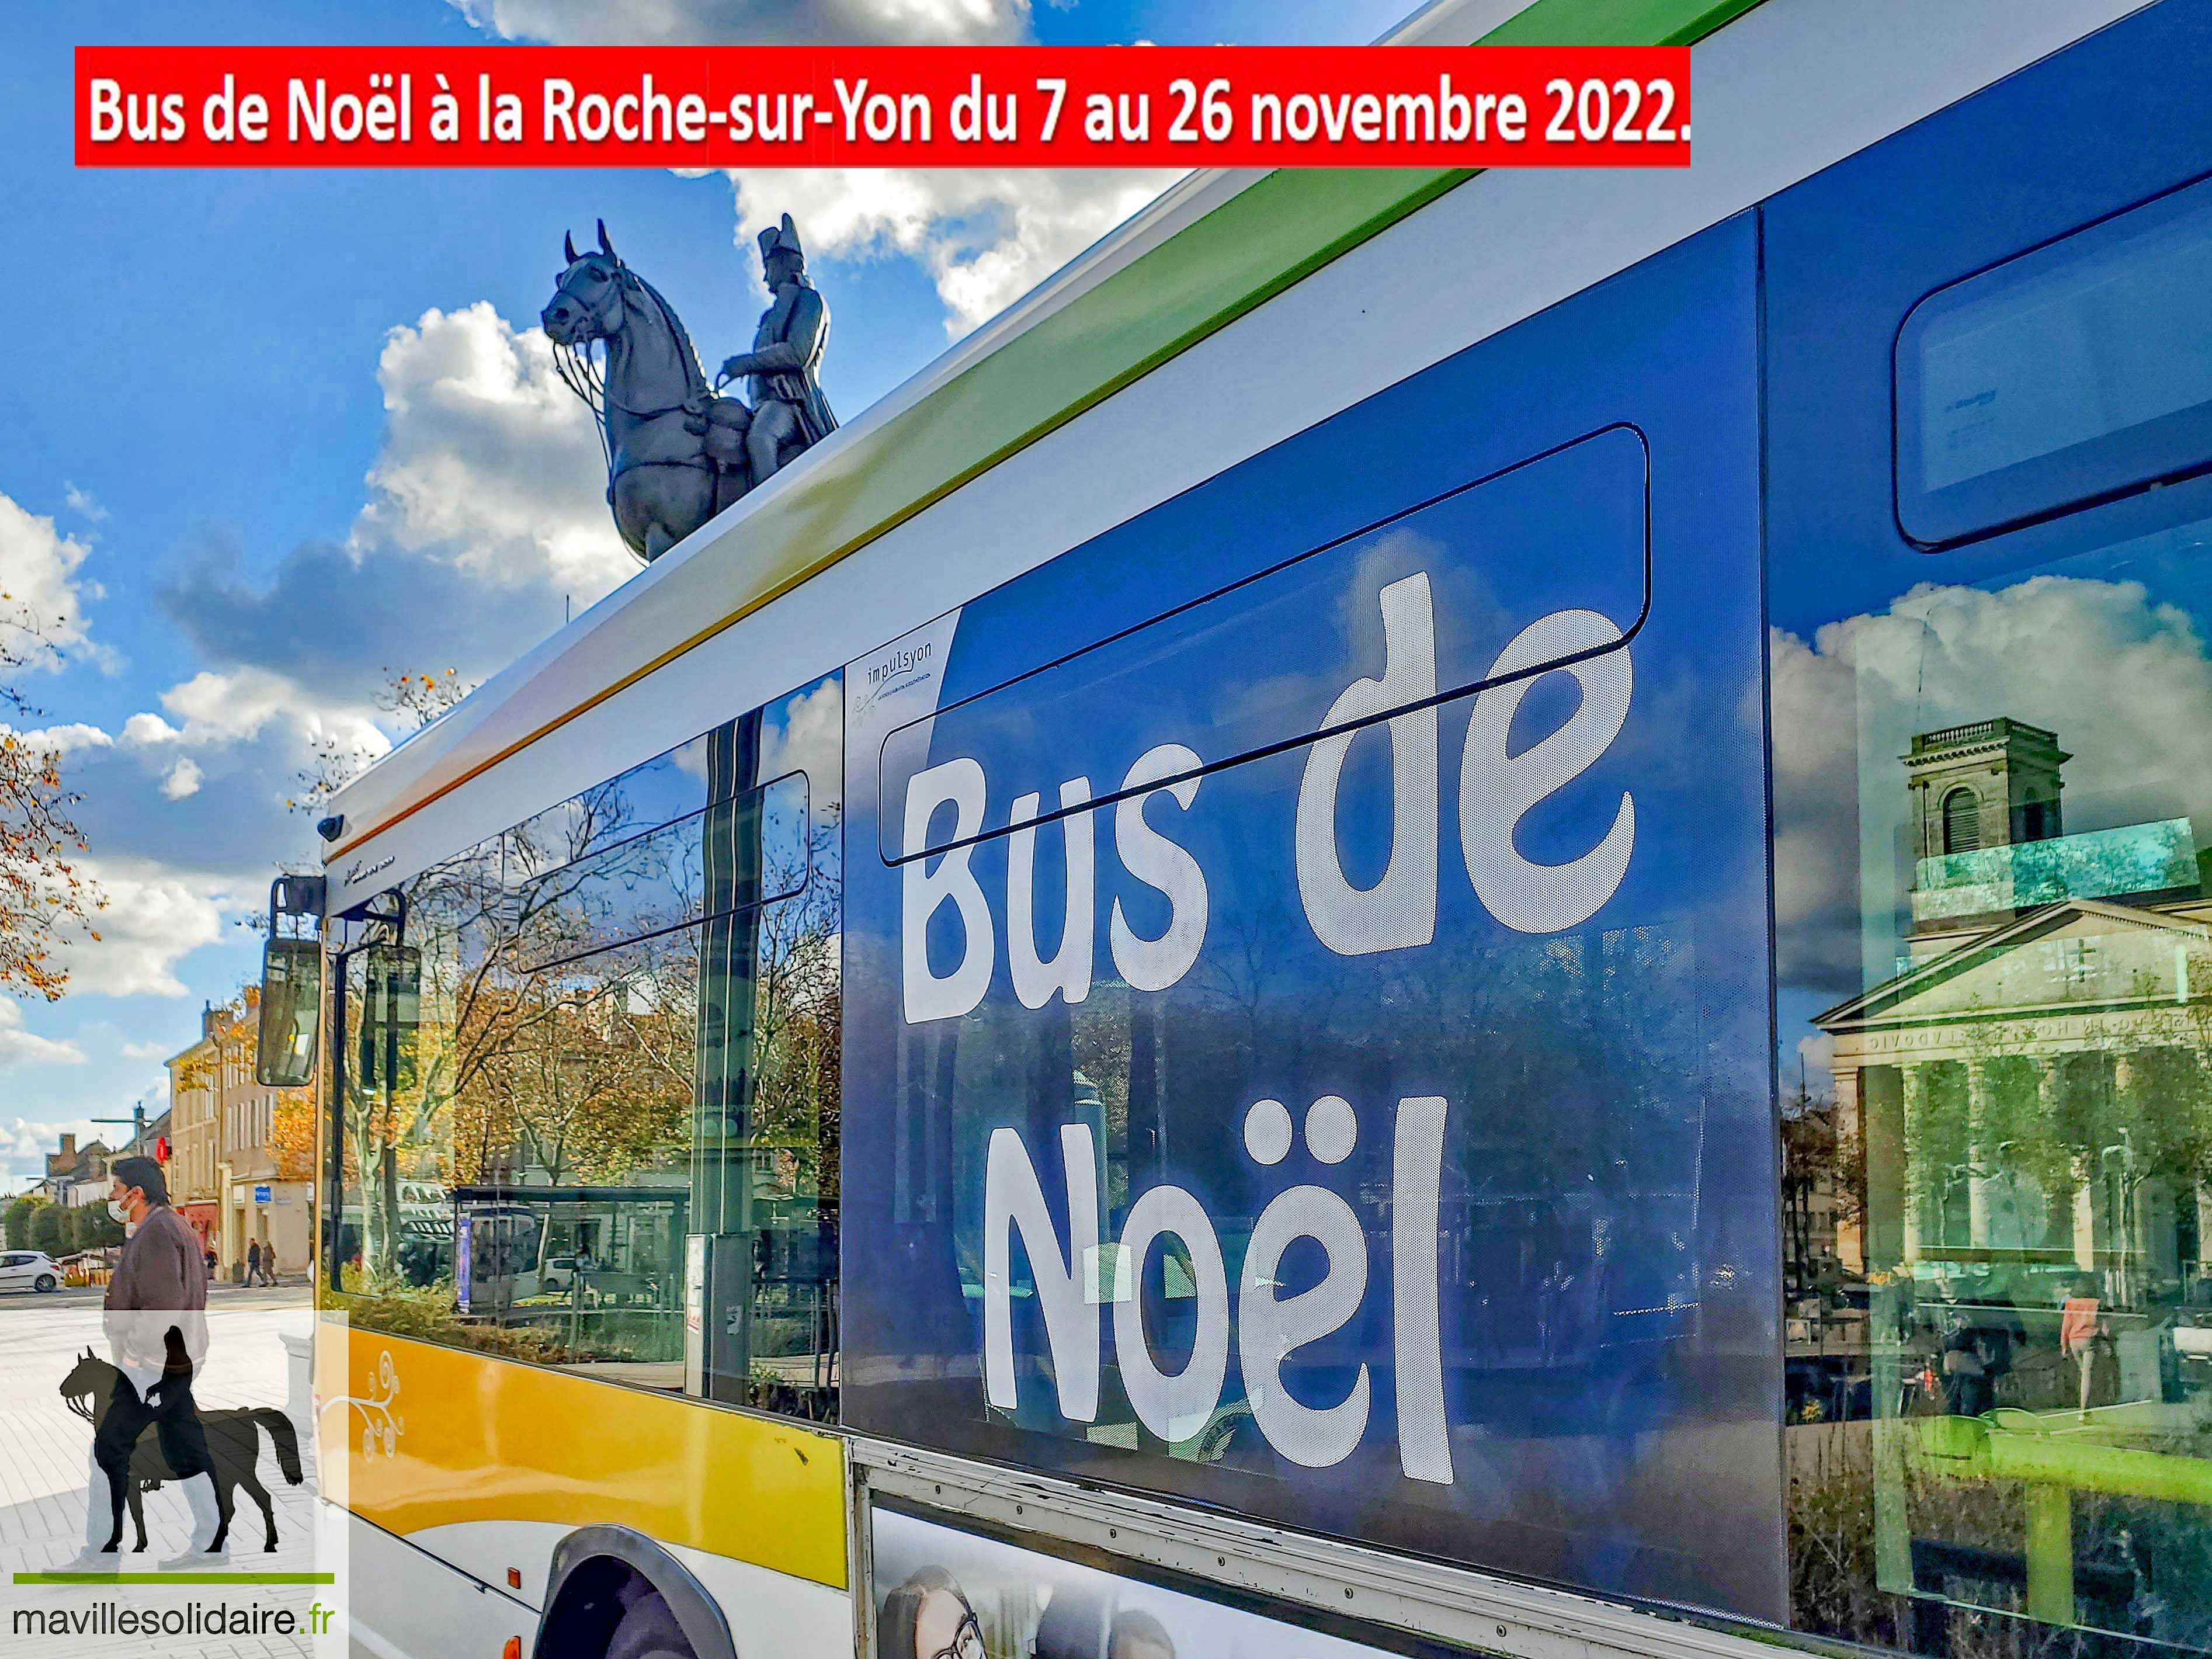 BUS DE NOEL 2021 La Roche sur Yon mavillesolidaire.fr 1